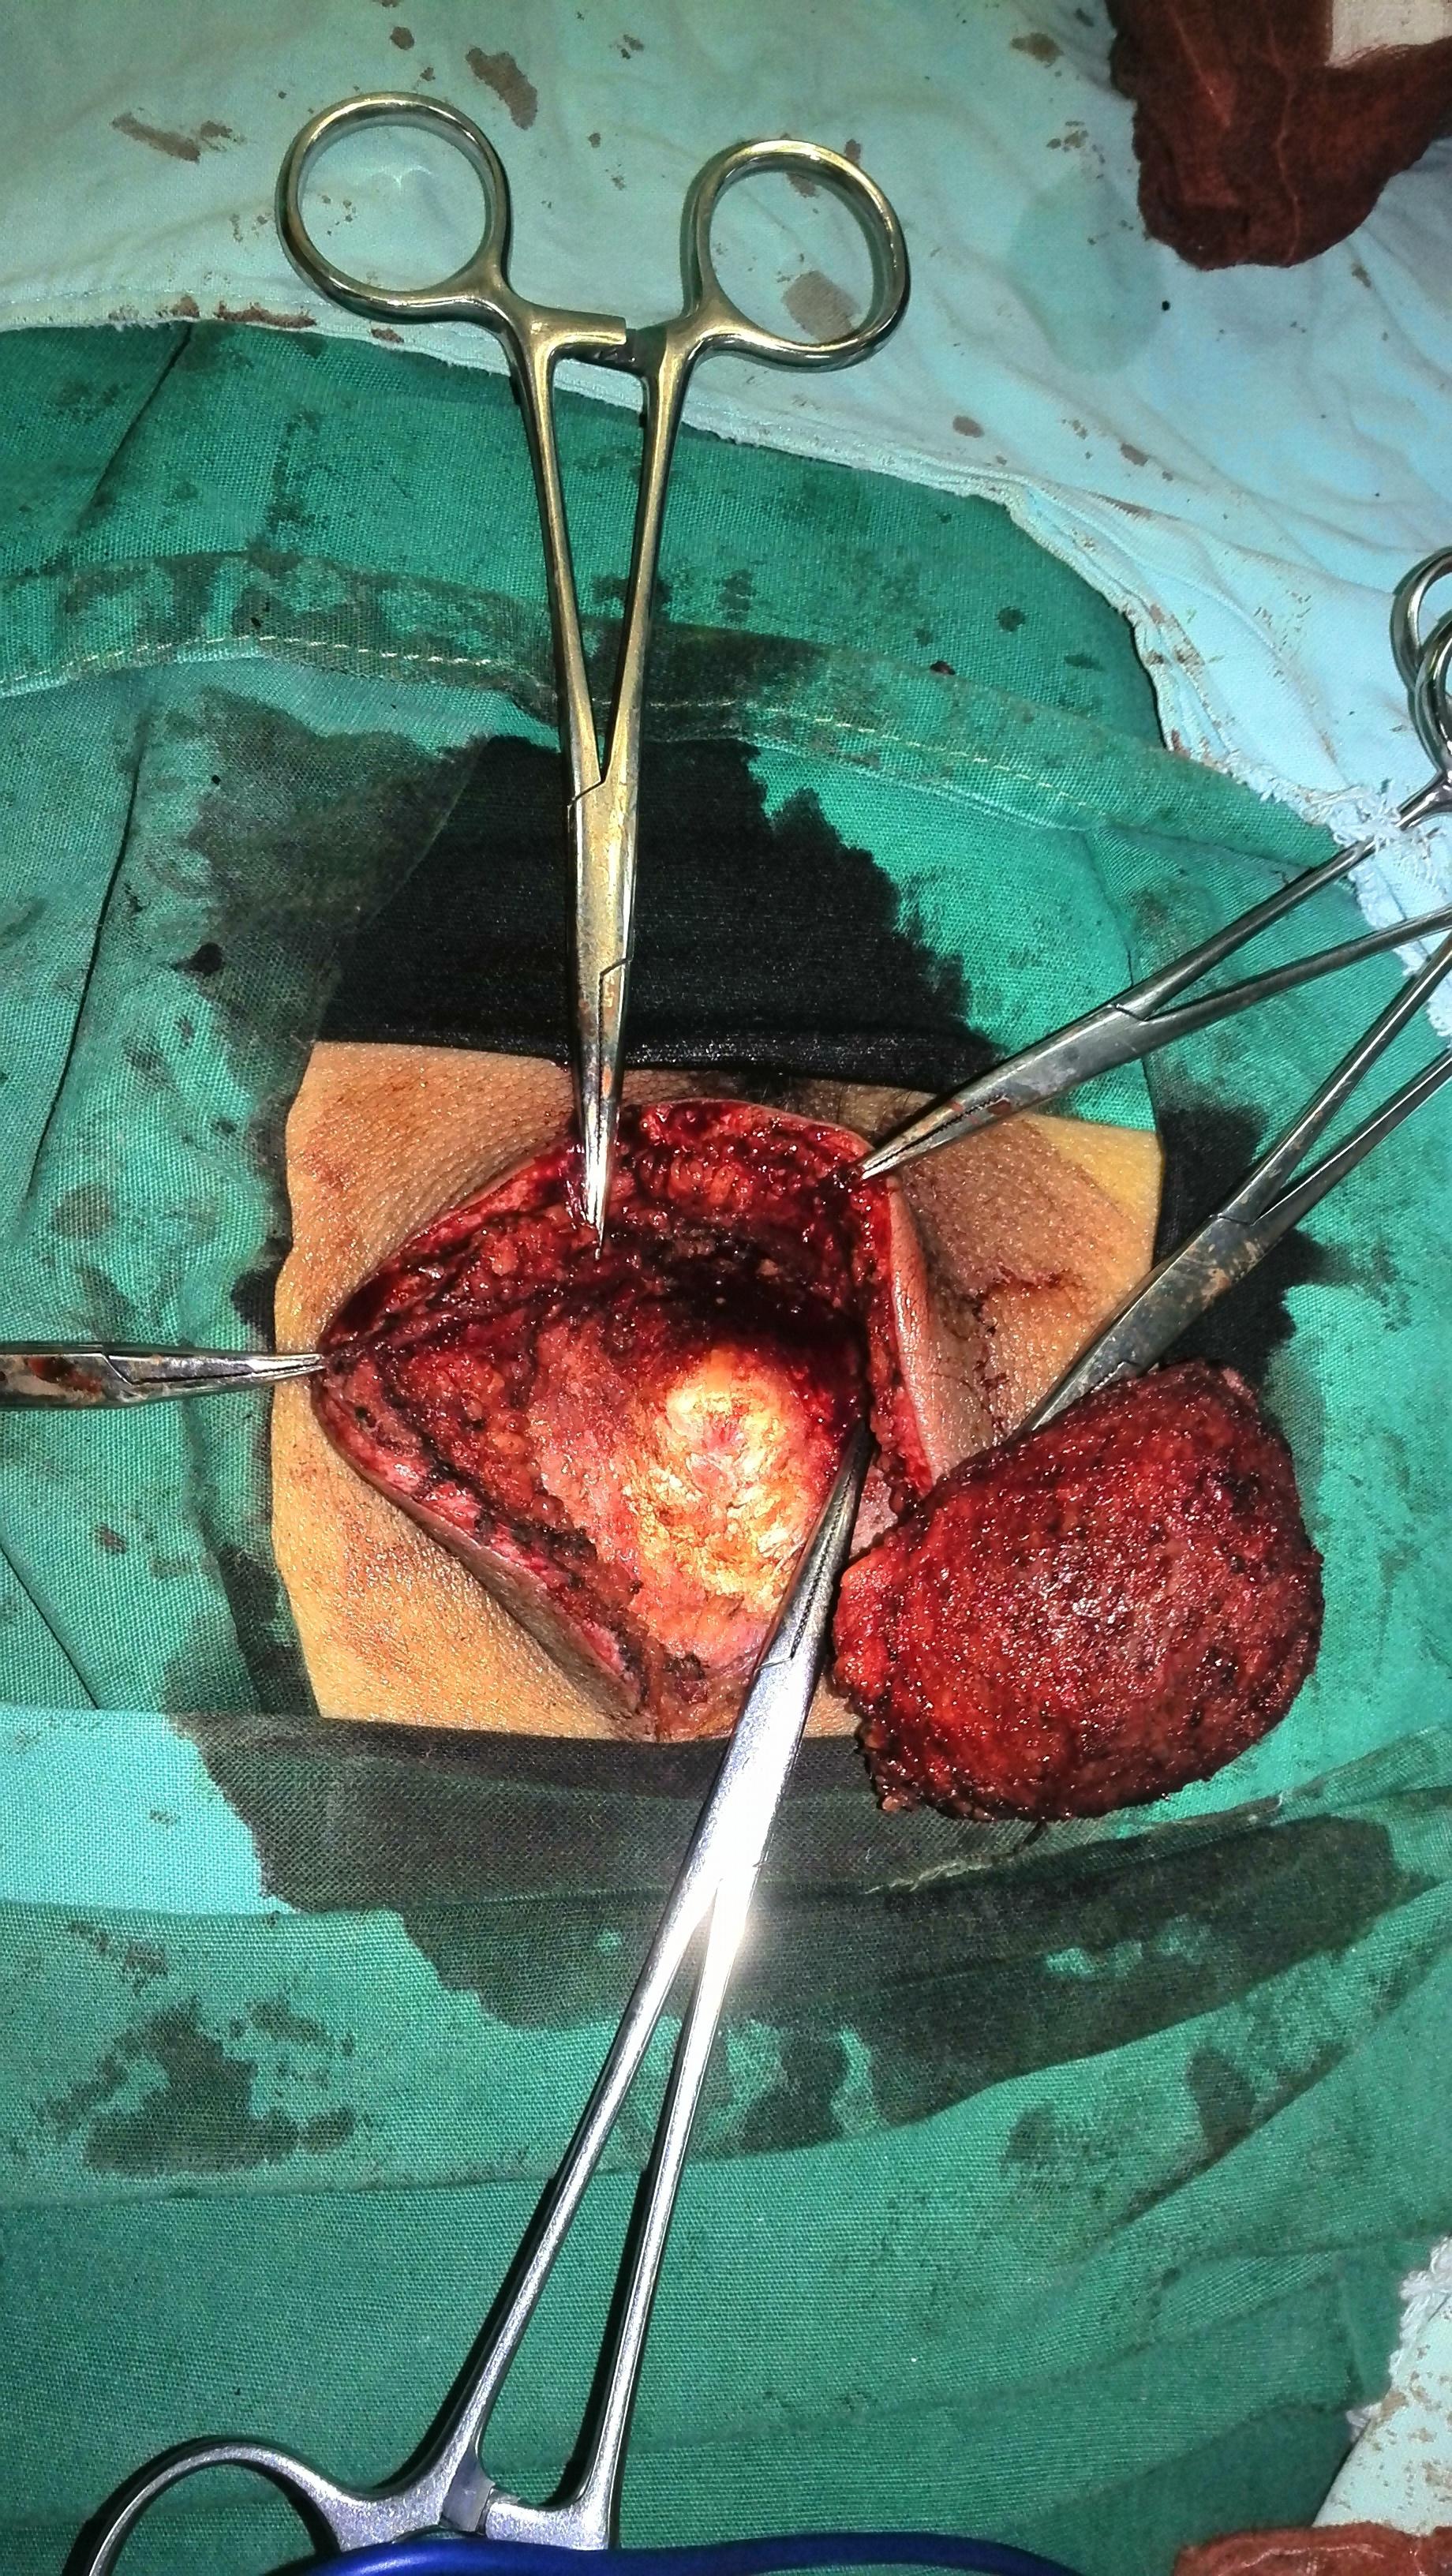 骶尾部脂肪瘤图片图片